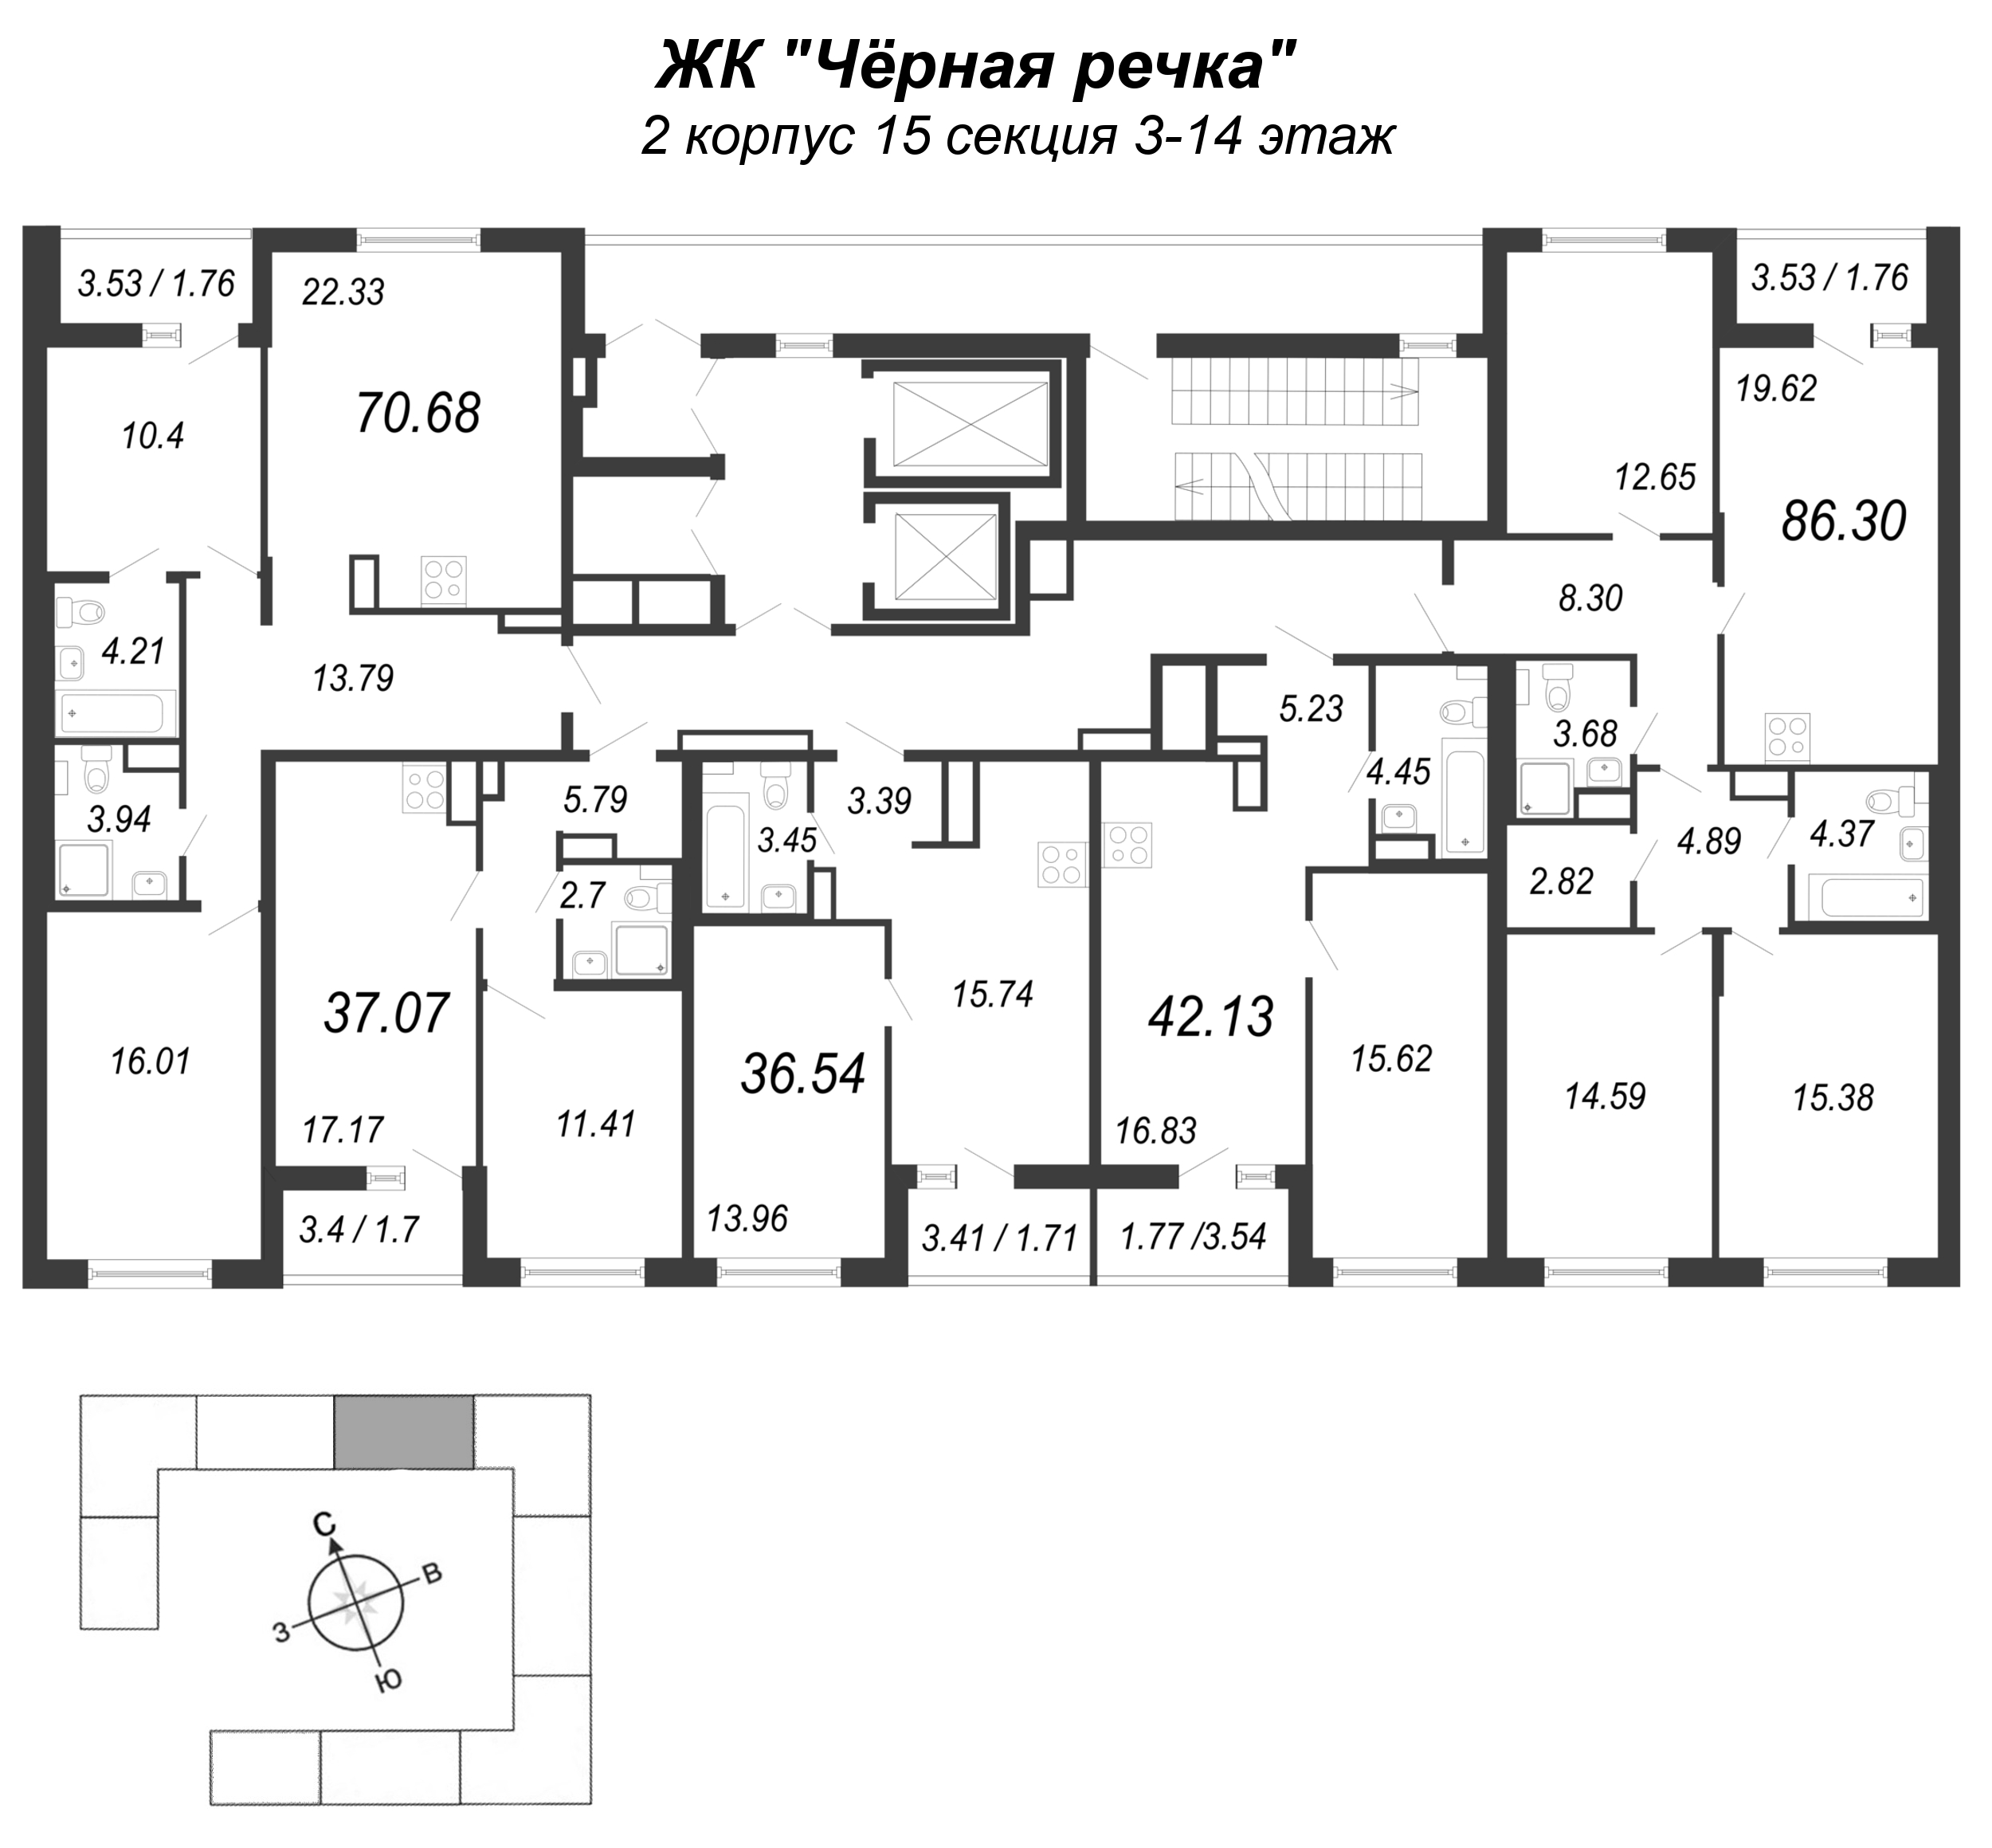 4-комнатная (Евро) квартира, 86.3 м² в ЖК "Чёрная речка" - планировка этажа